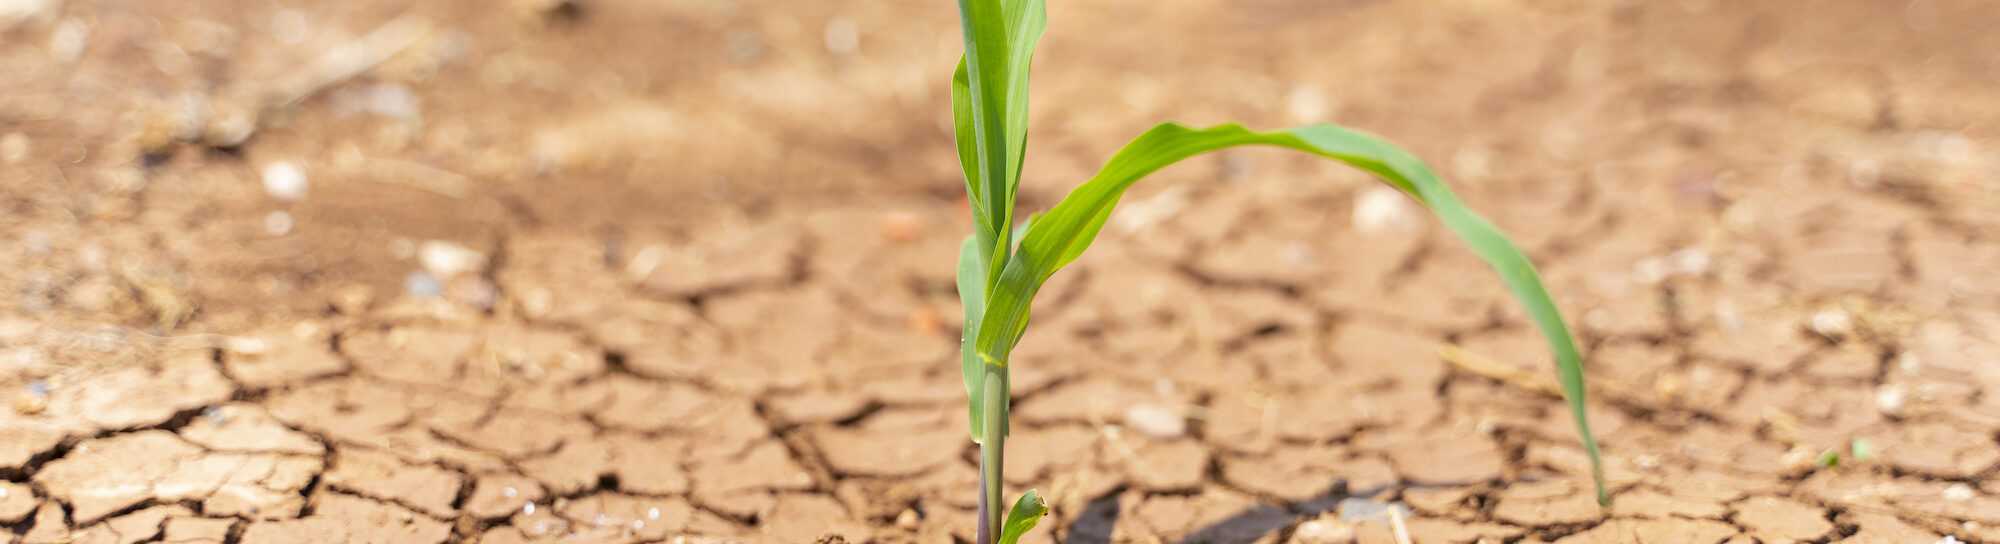 Dürretoleranter Mais als Reaktion auf Klimawandel